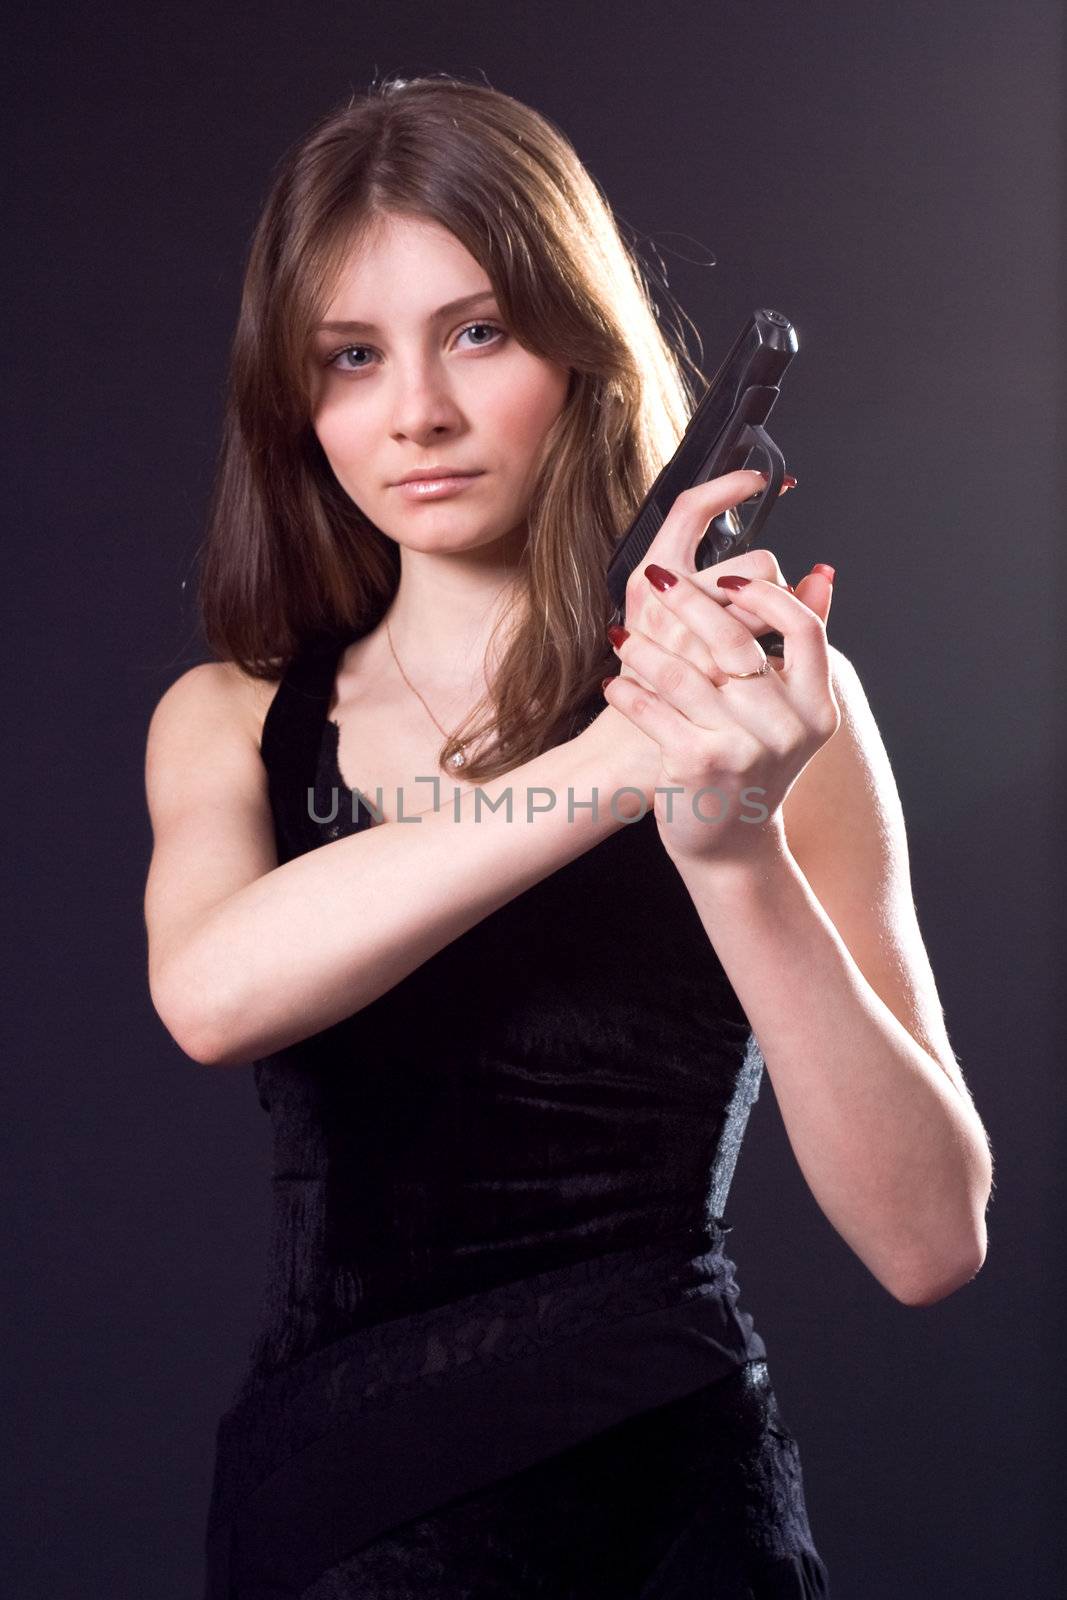 lady in black handing pistol
